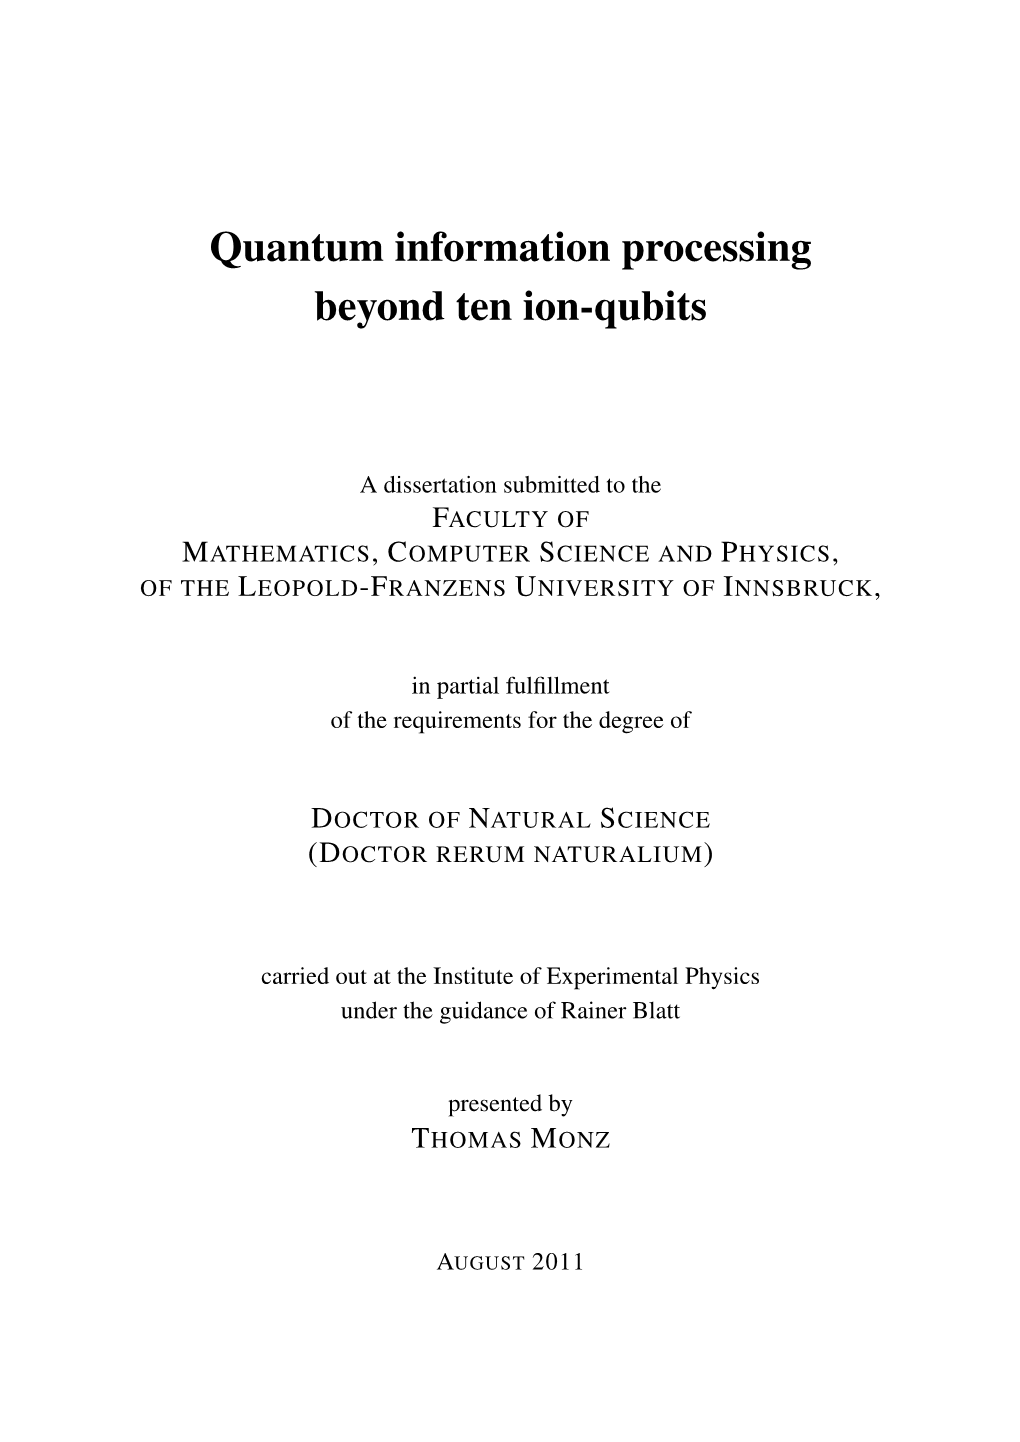 Quantum Information Processing Beyond Ten Ion-Qubits